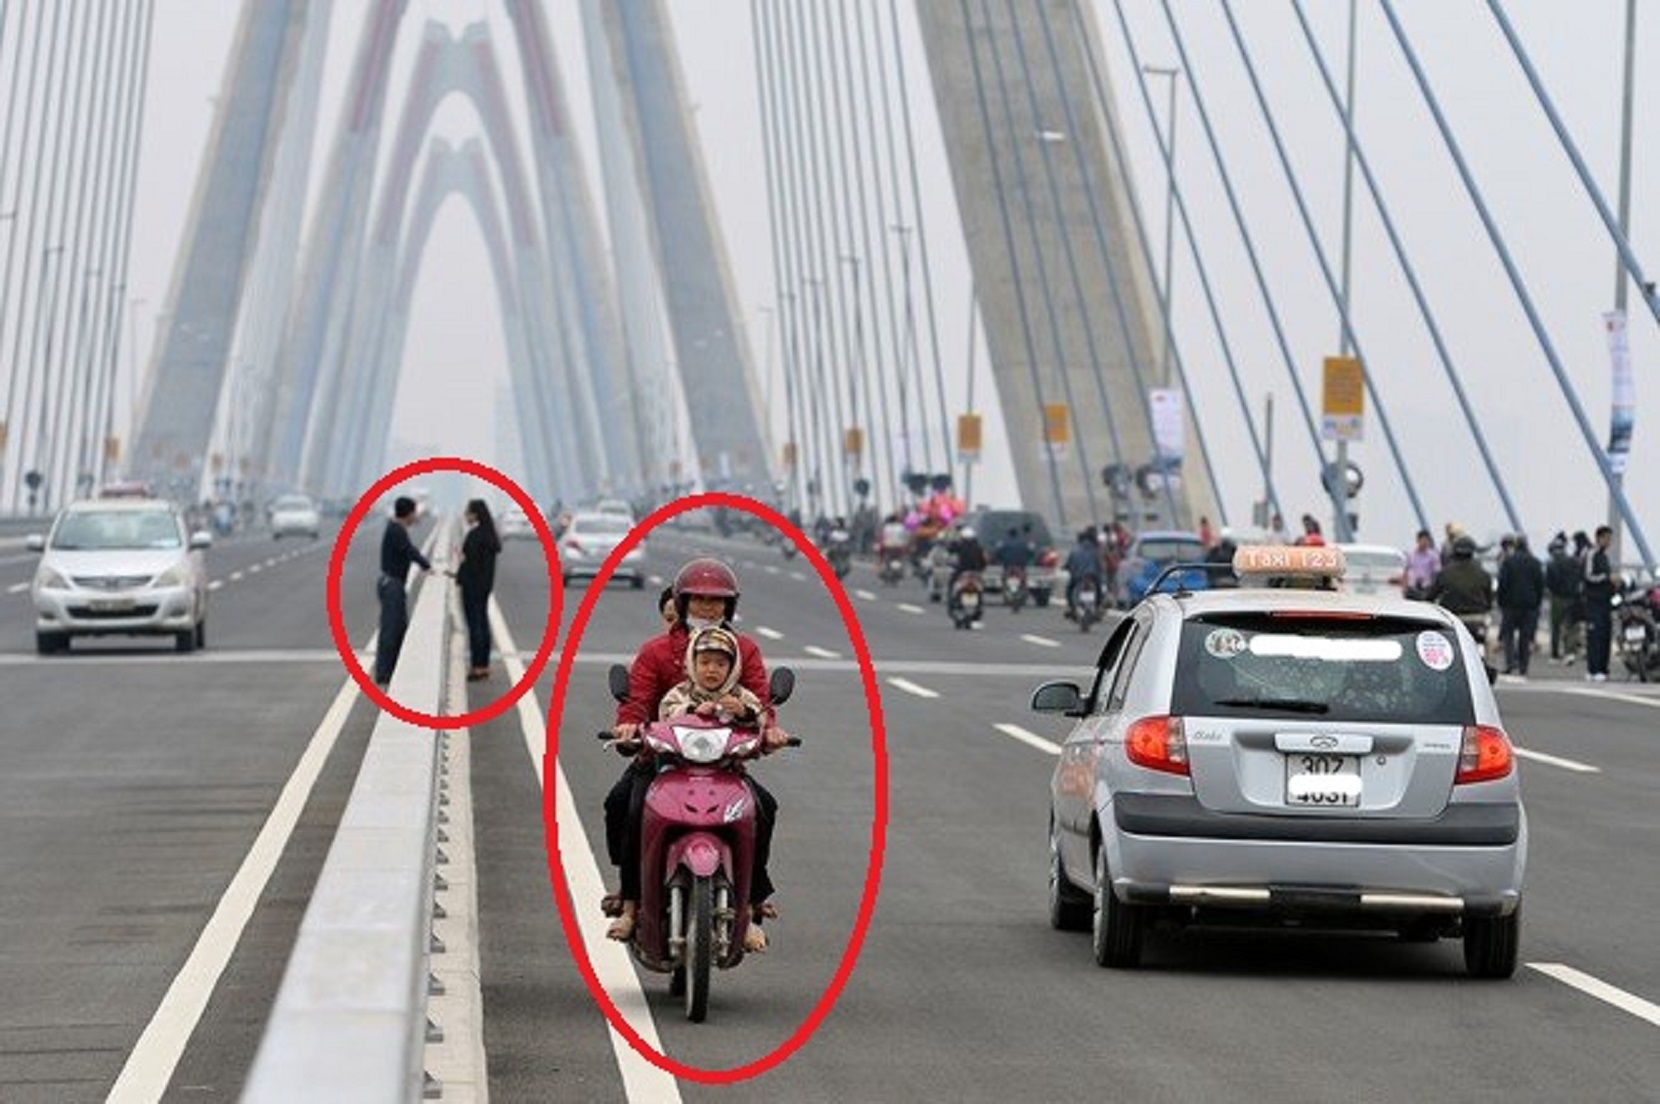 “Xe to đền xe bé” và những oái oăm cùng cực trong giao thông ở Việt Nam